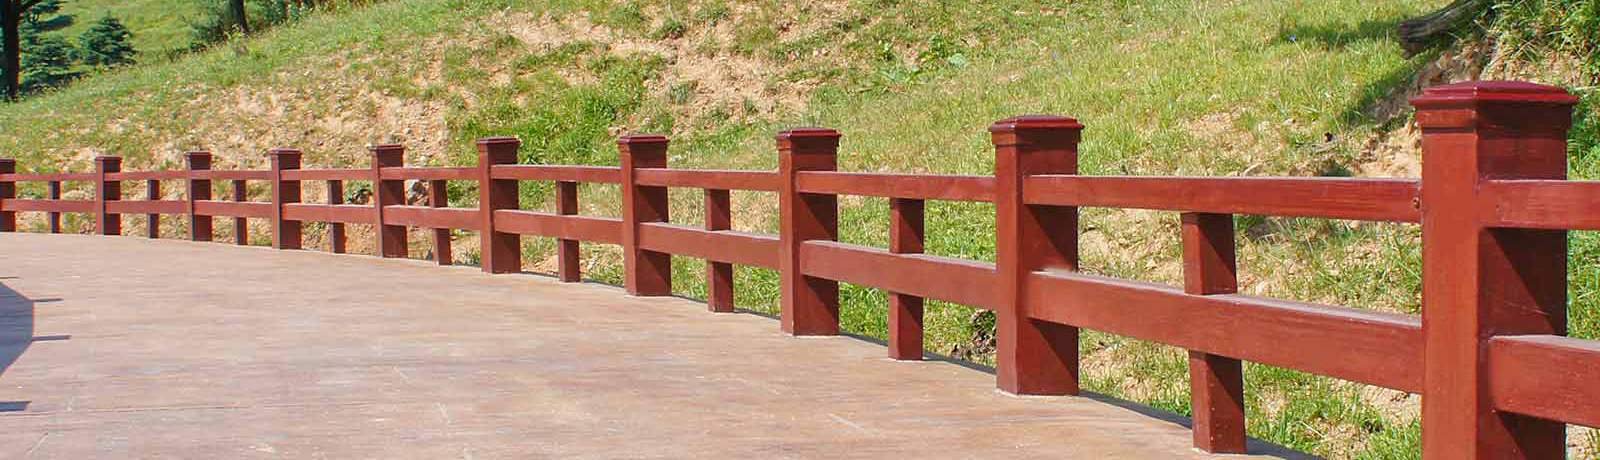 仿木栏杆的生产工艺及安装介绍贴近自然实用美观